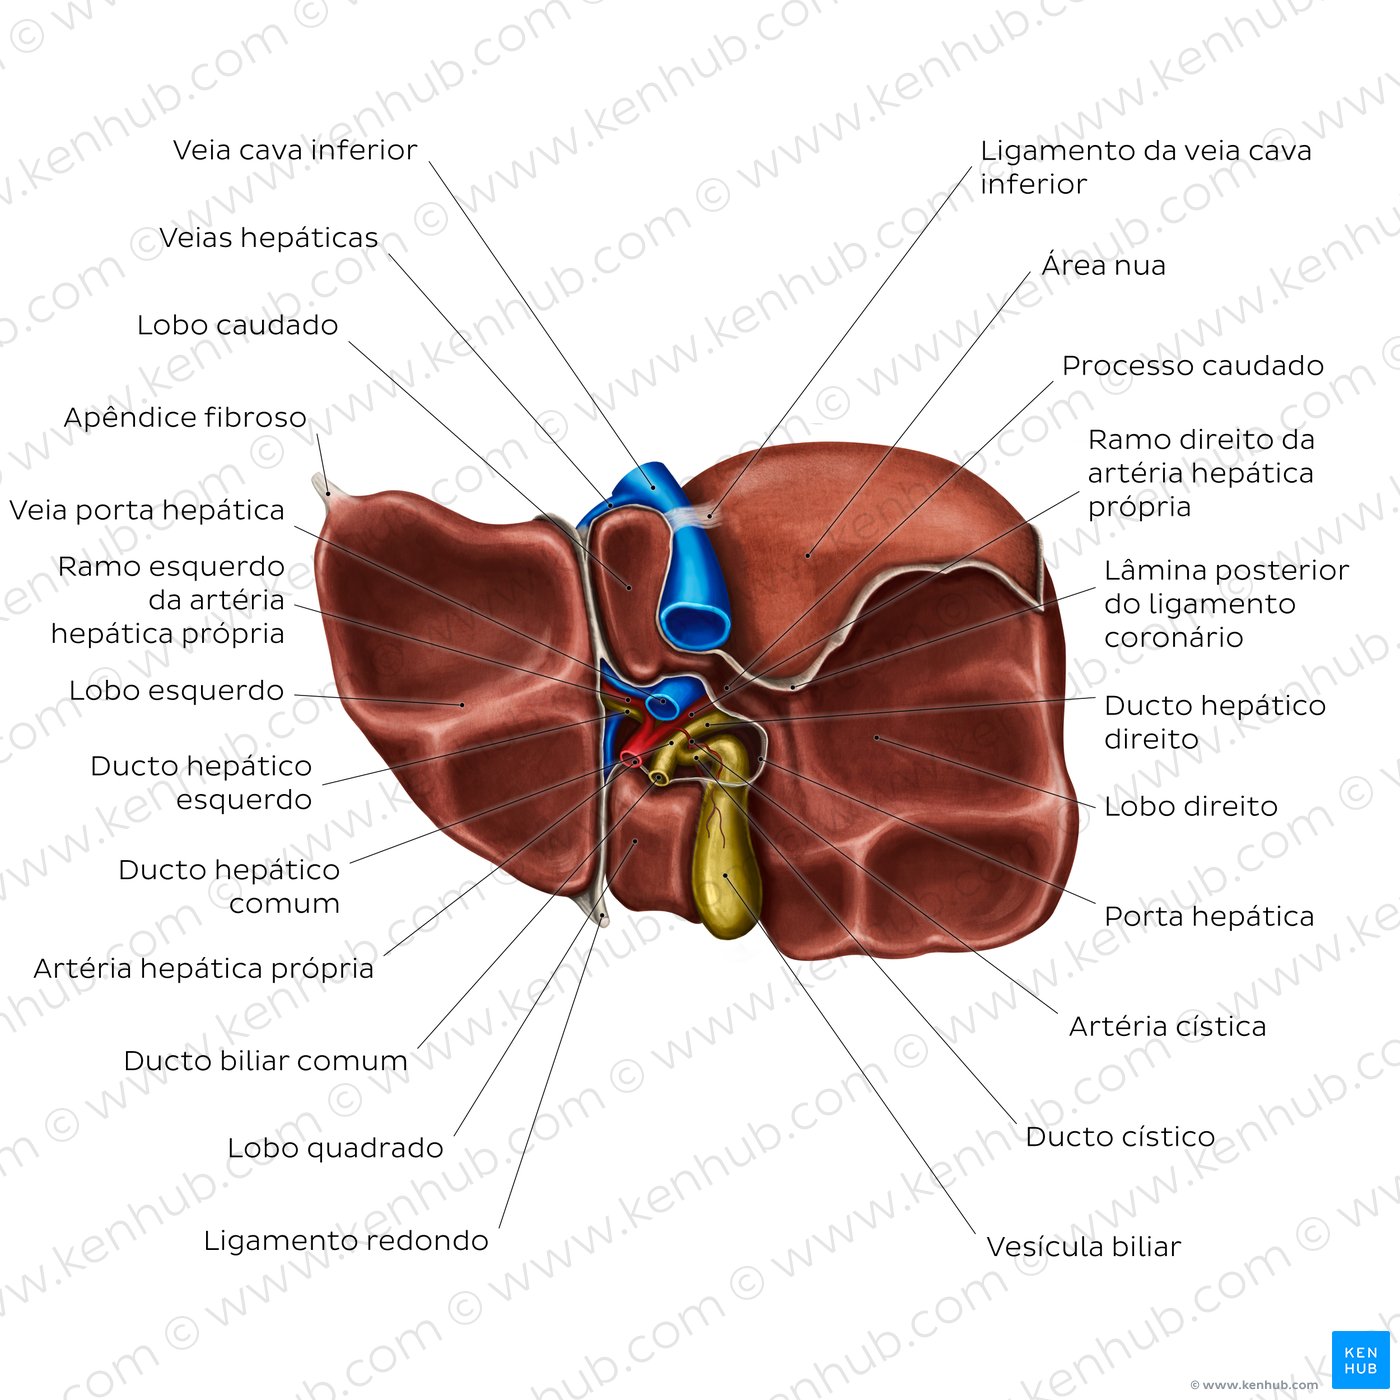 Anatomia da superfície visceral do fígado - vista inferior